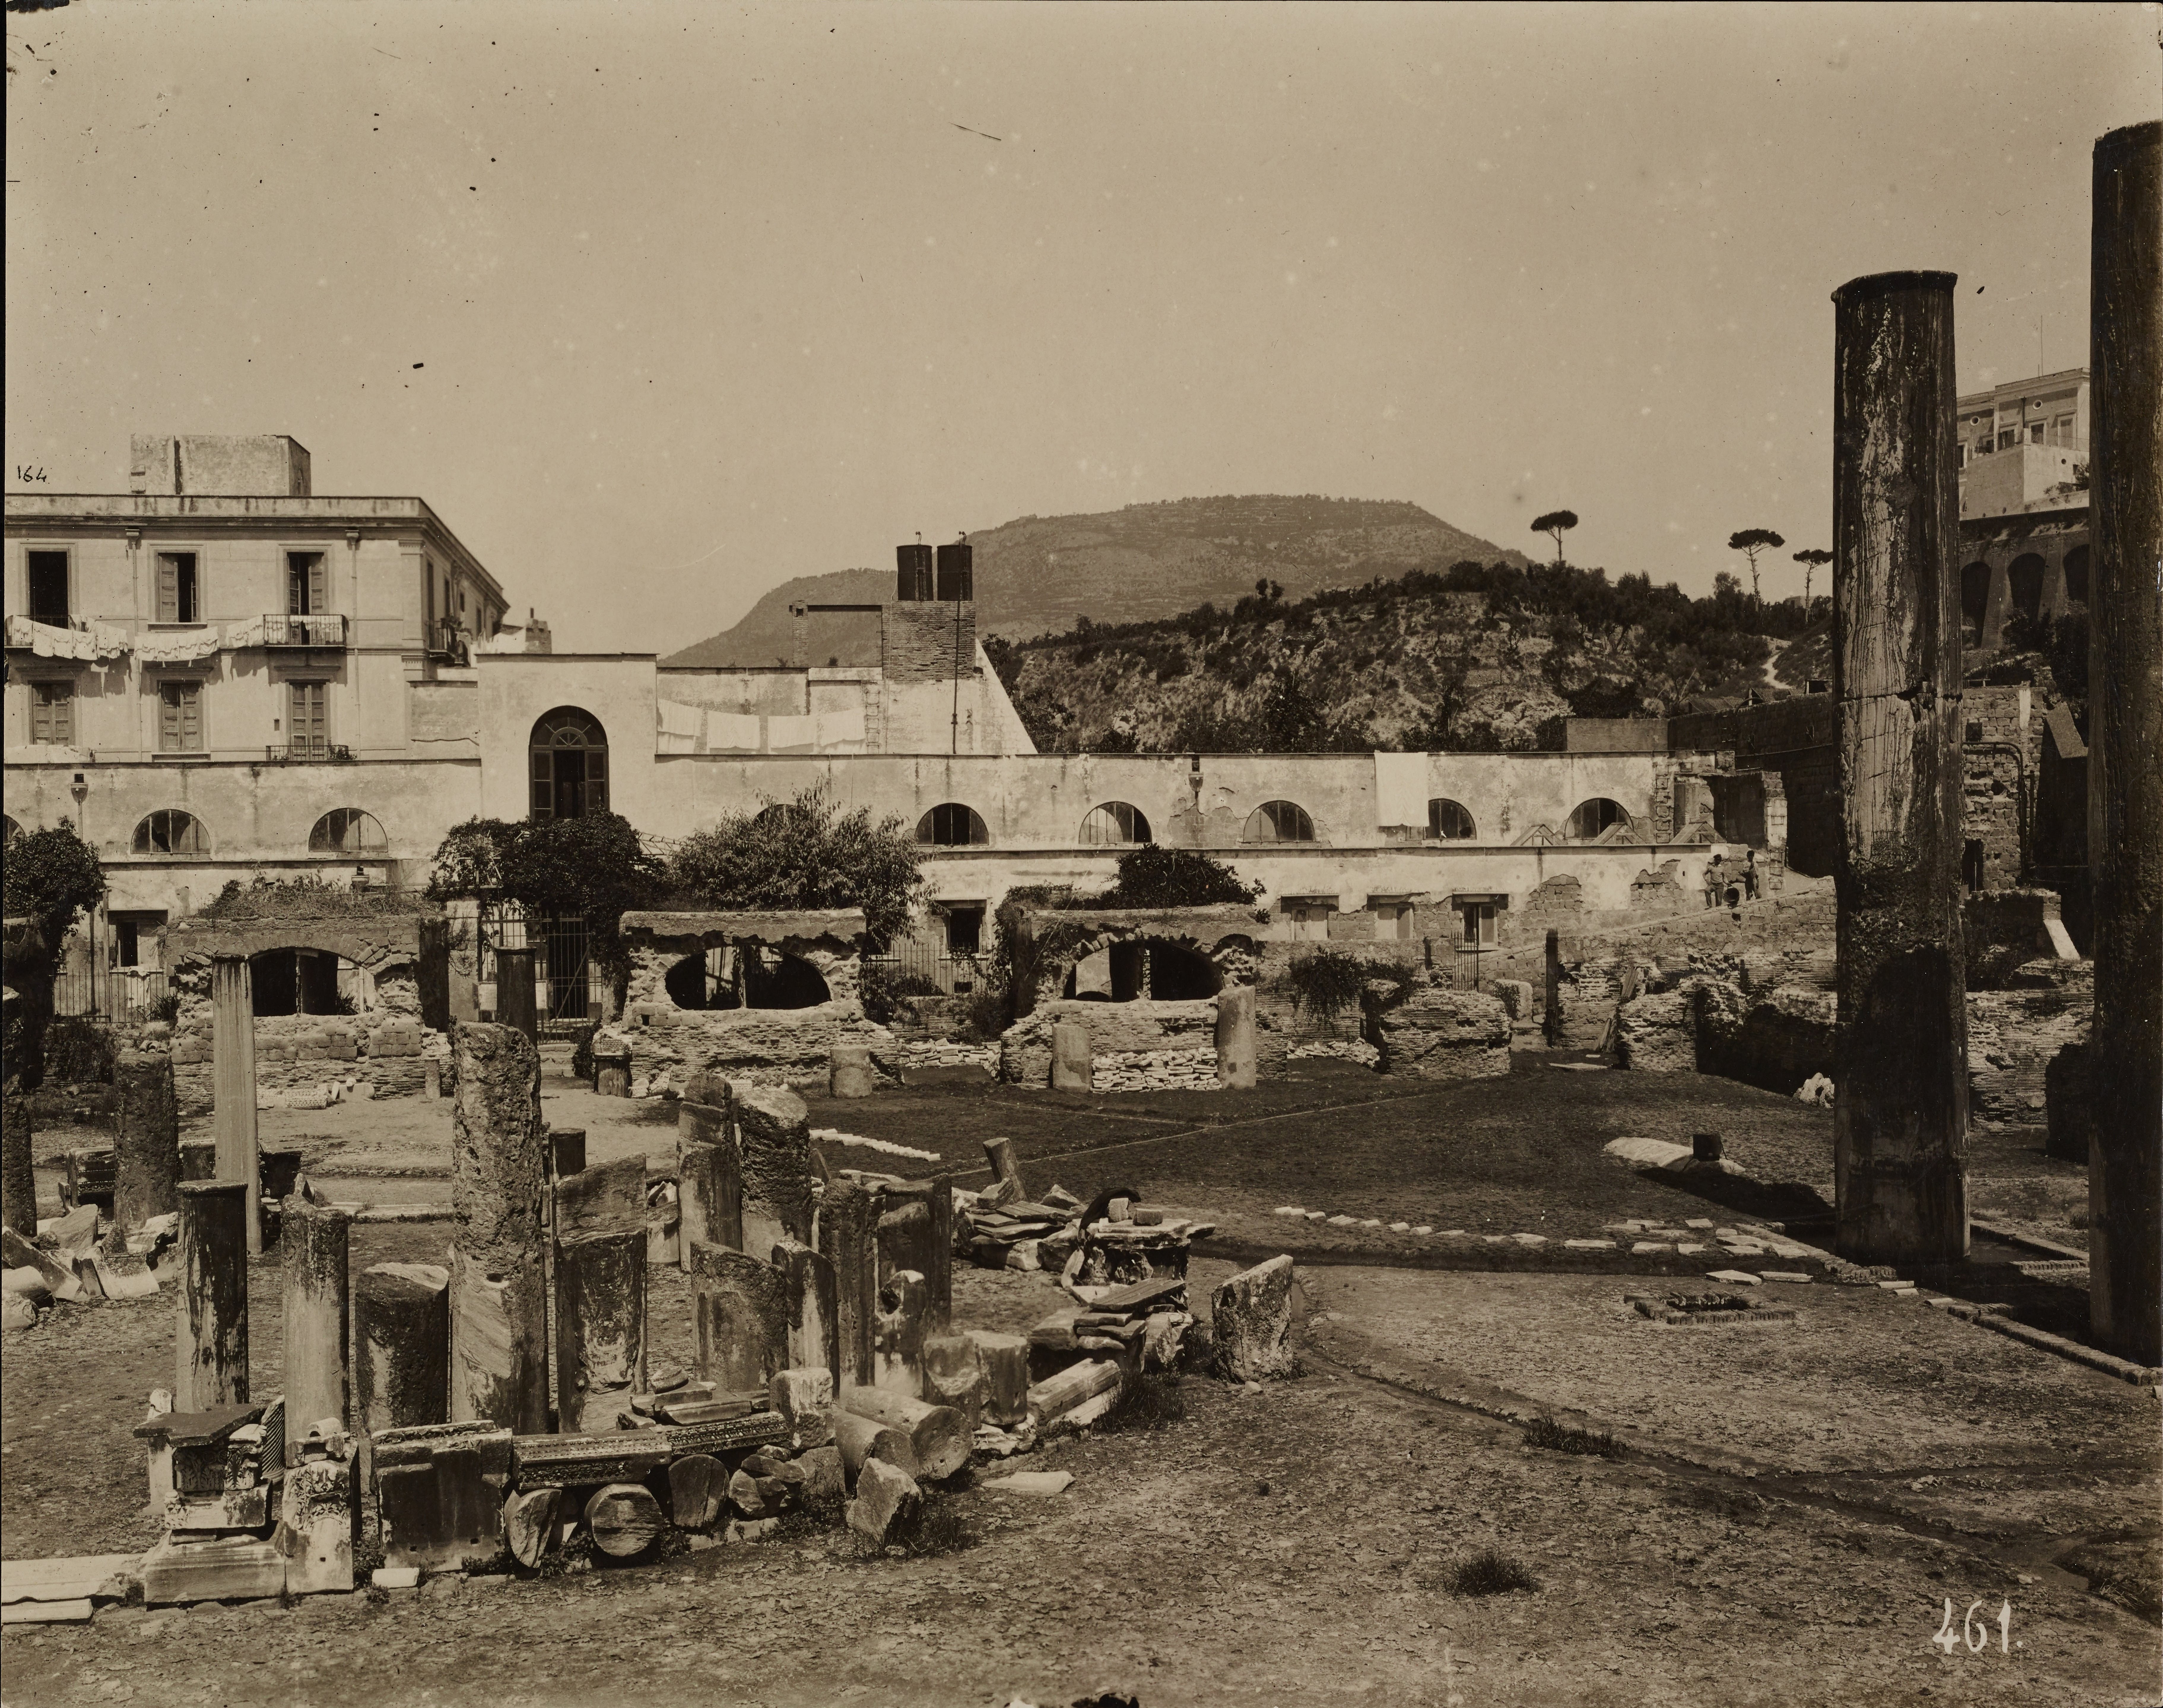 Fotografo non identificato, Pozzuoli - Tempio di Serapide o Macellum, colonne e frammenti scultorei, 1926-1950, gelatina ai sali d'argento, MPI6014279